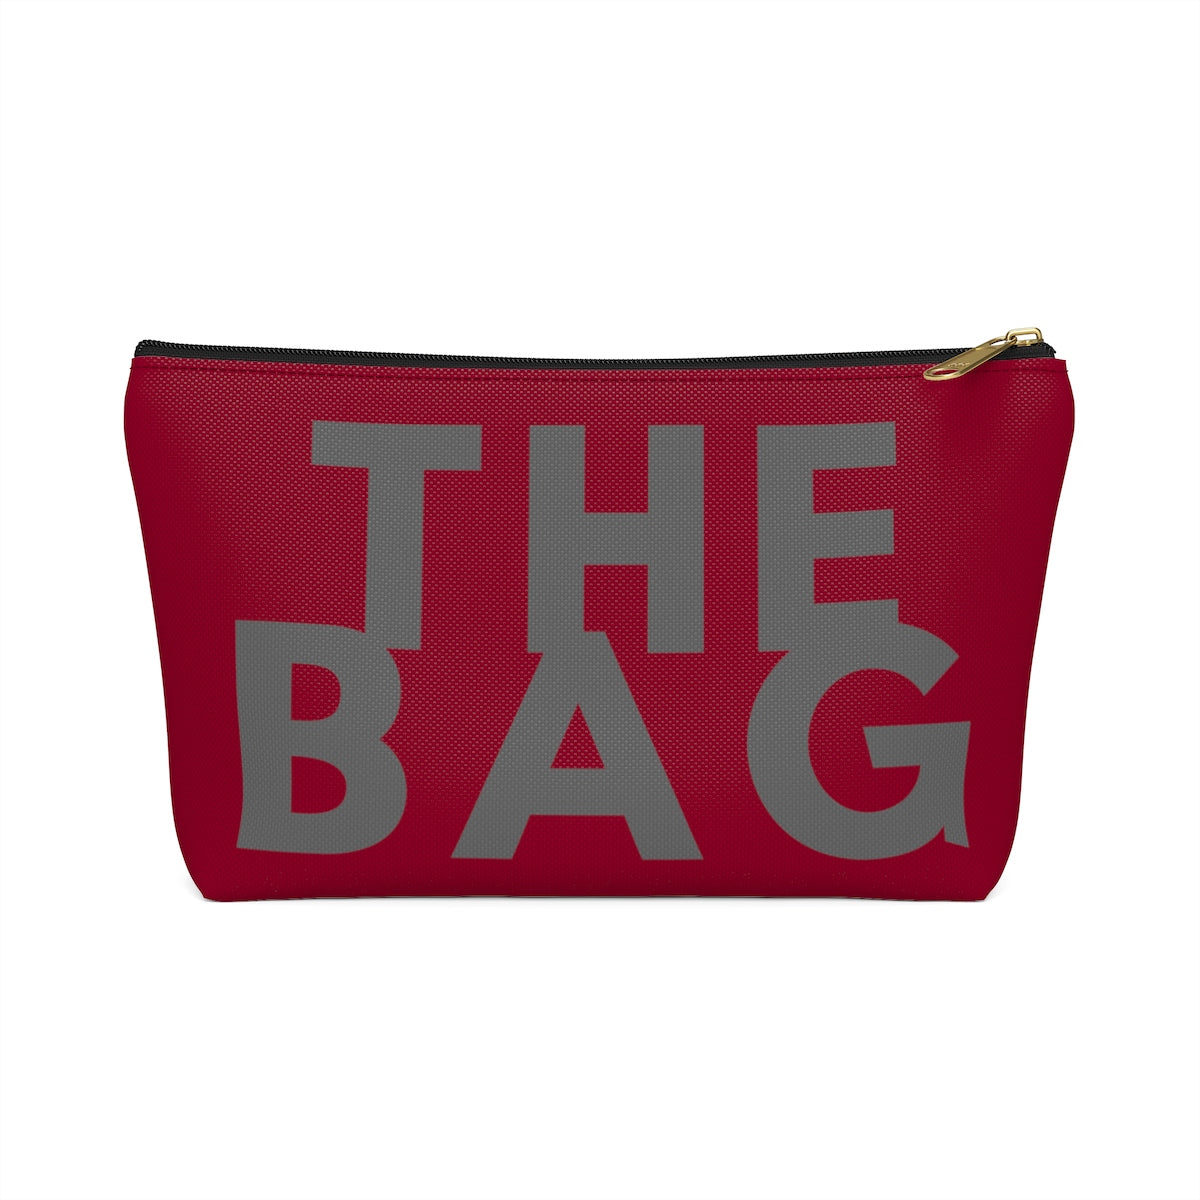 Secure The Bag (Bordeaux Pouch)